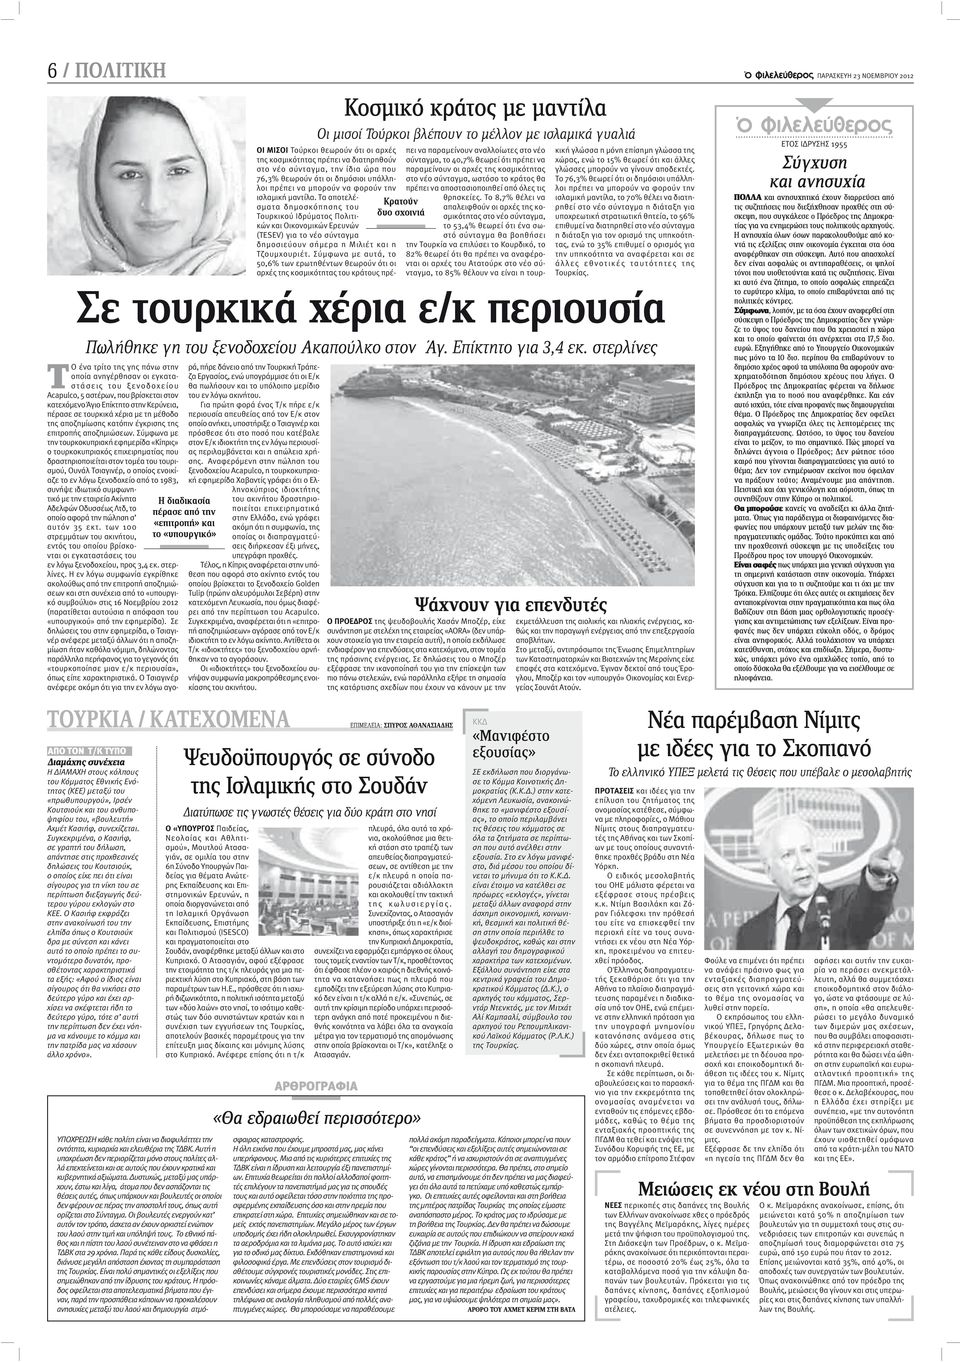 Σύμφωνα με την τουρκοκυπριακή εφημερίδα «Κίπρις» ο τουρκοκυπριακός επιχειρηματίας που δραστηριοποιείται στον τομέα του τουρισμού, Ουνάλ Τσιαγινέρ, ο οποίος ενοικίαζε το εν λόγω ξενοδοχείο από το